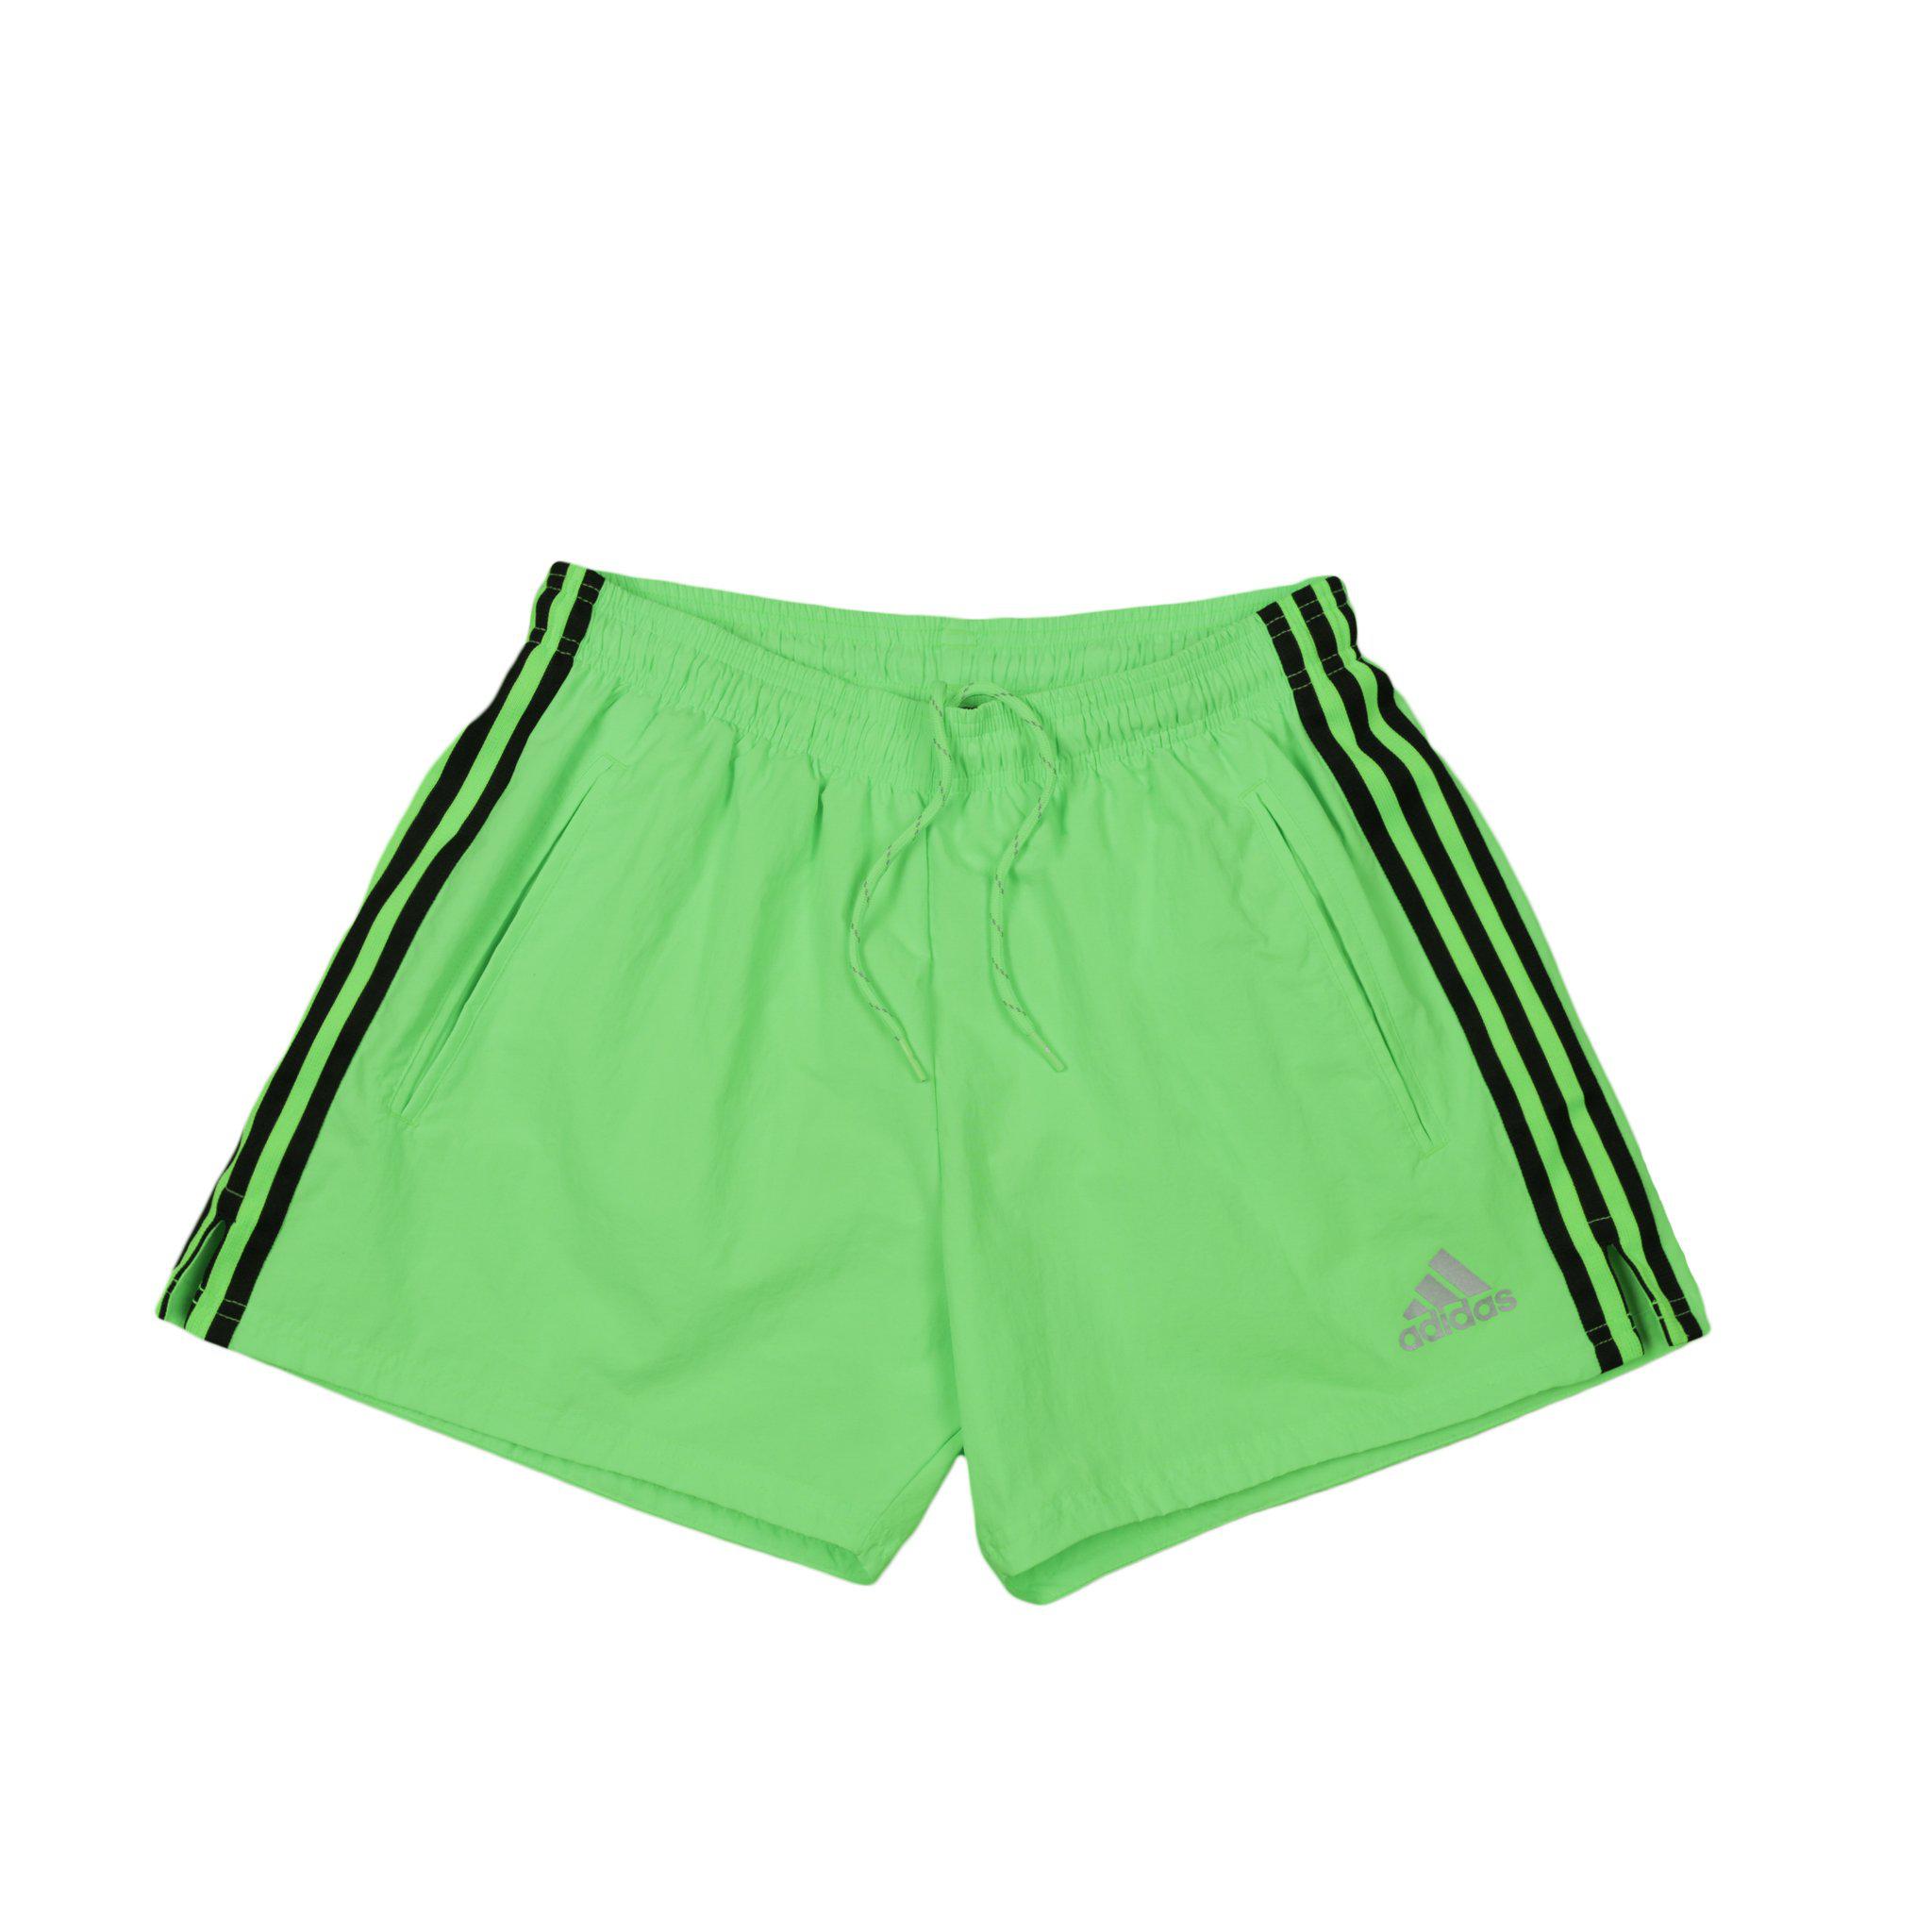 Gosha Rubchinskiy Adidas Soccer Shorts 